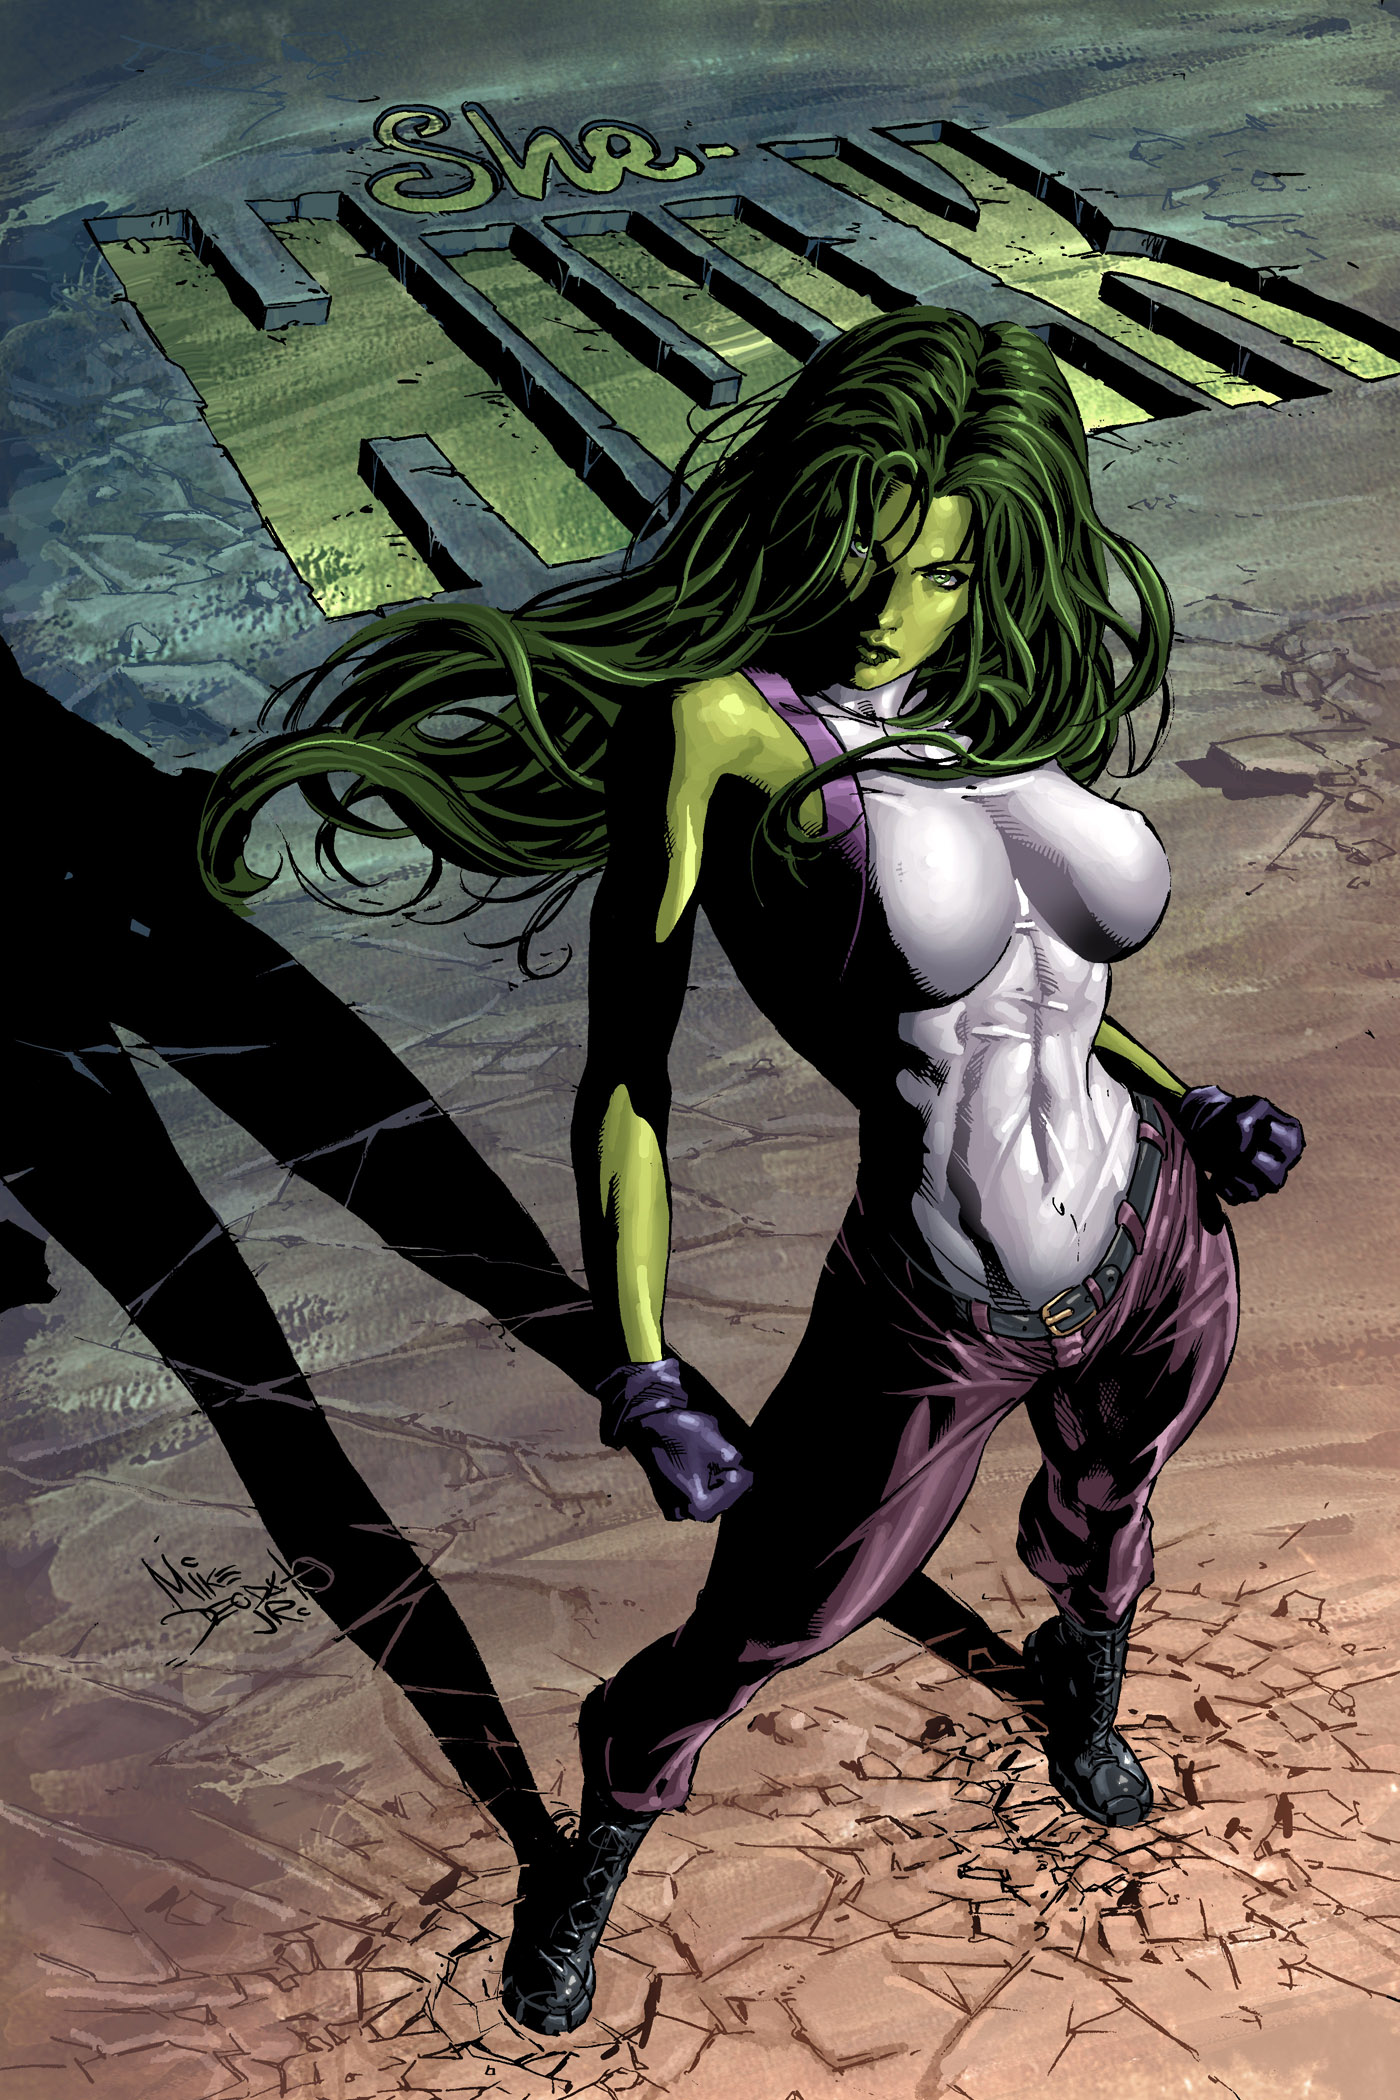 Supergirl Vs She Hulk...Who's Hotter?